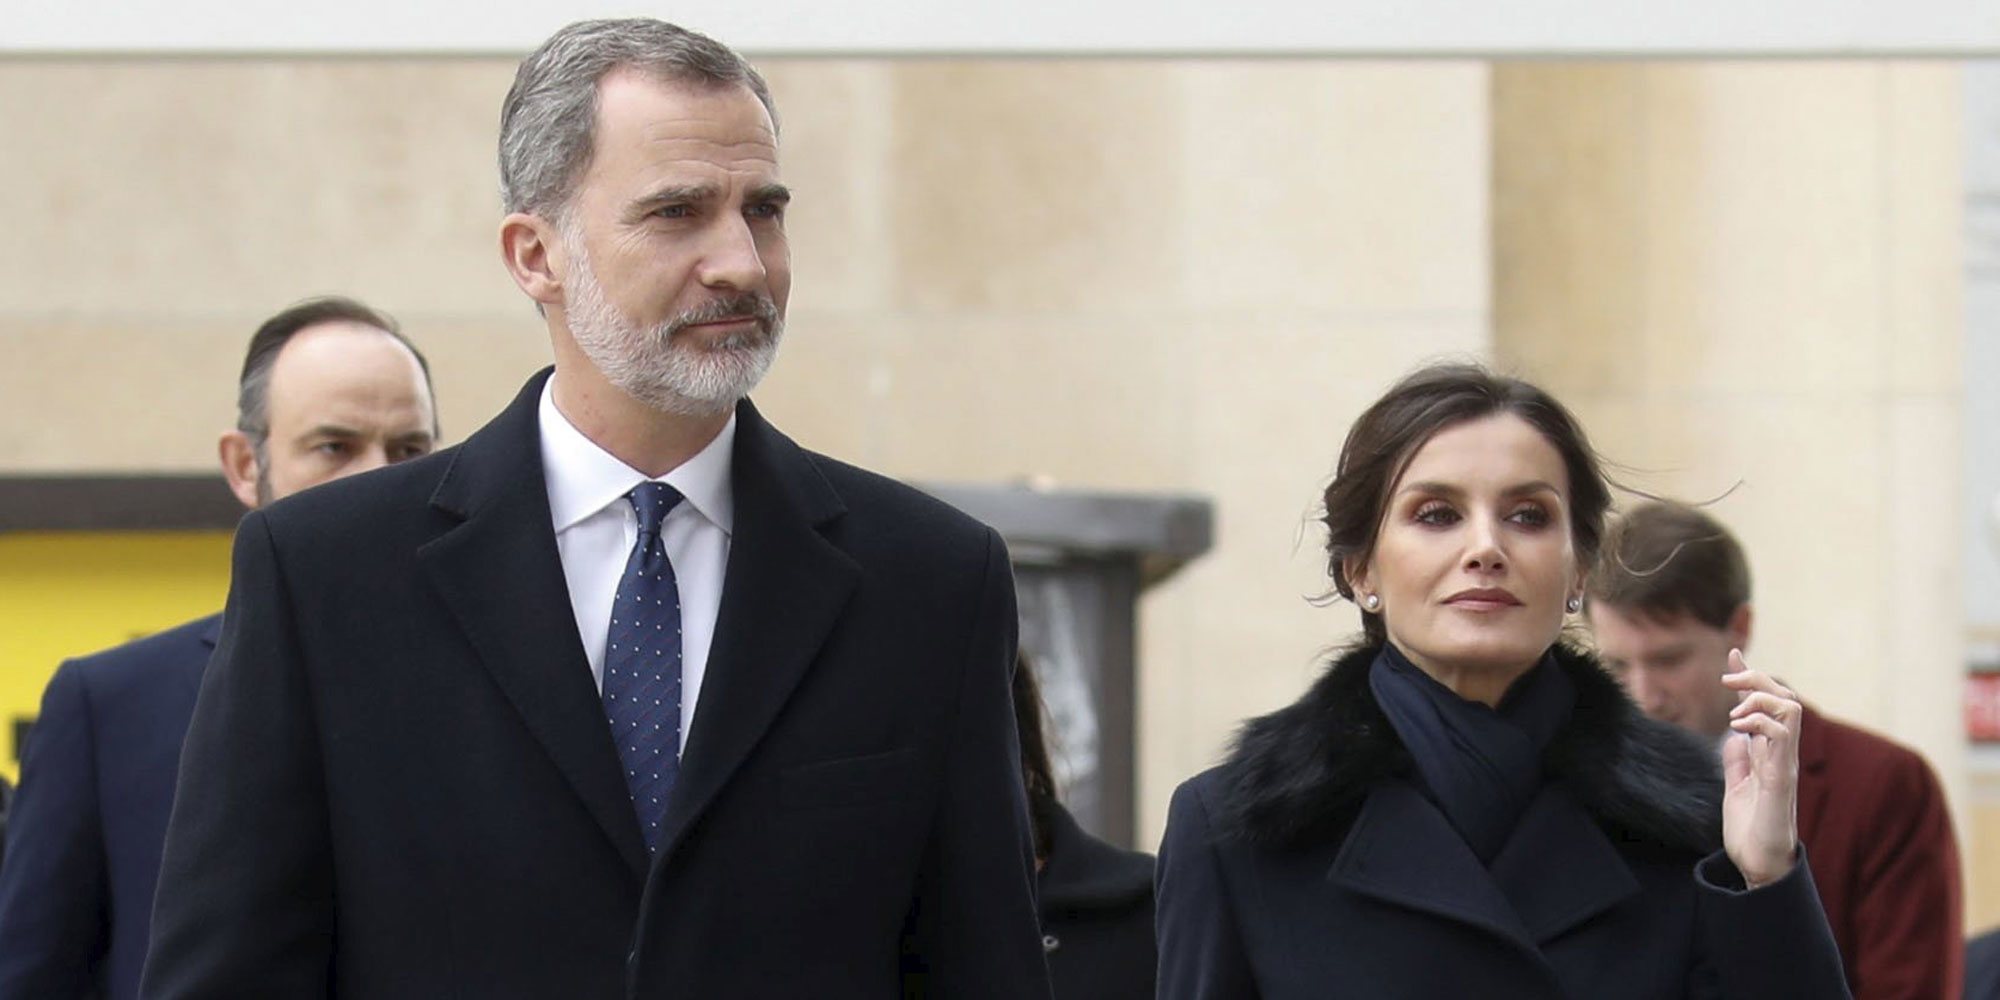 Los Reyes Felipe y Letizia ante el coronavirus: actos cancelados en España, aglomeración en París y pruebas por Irene Montero